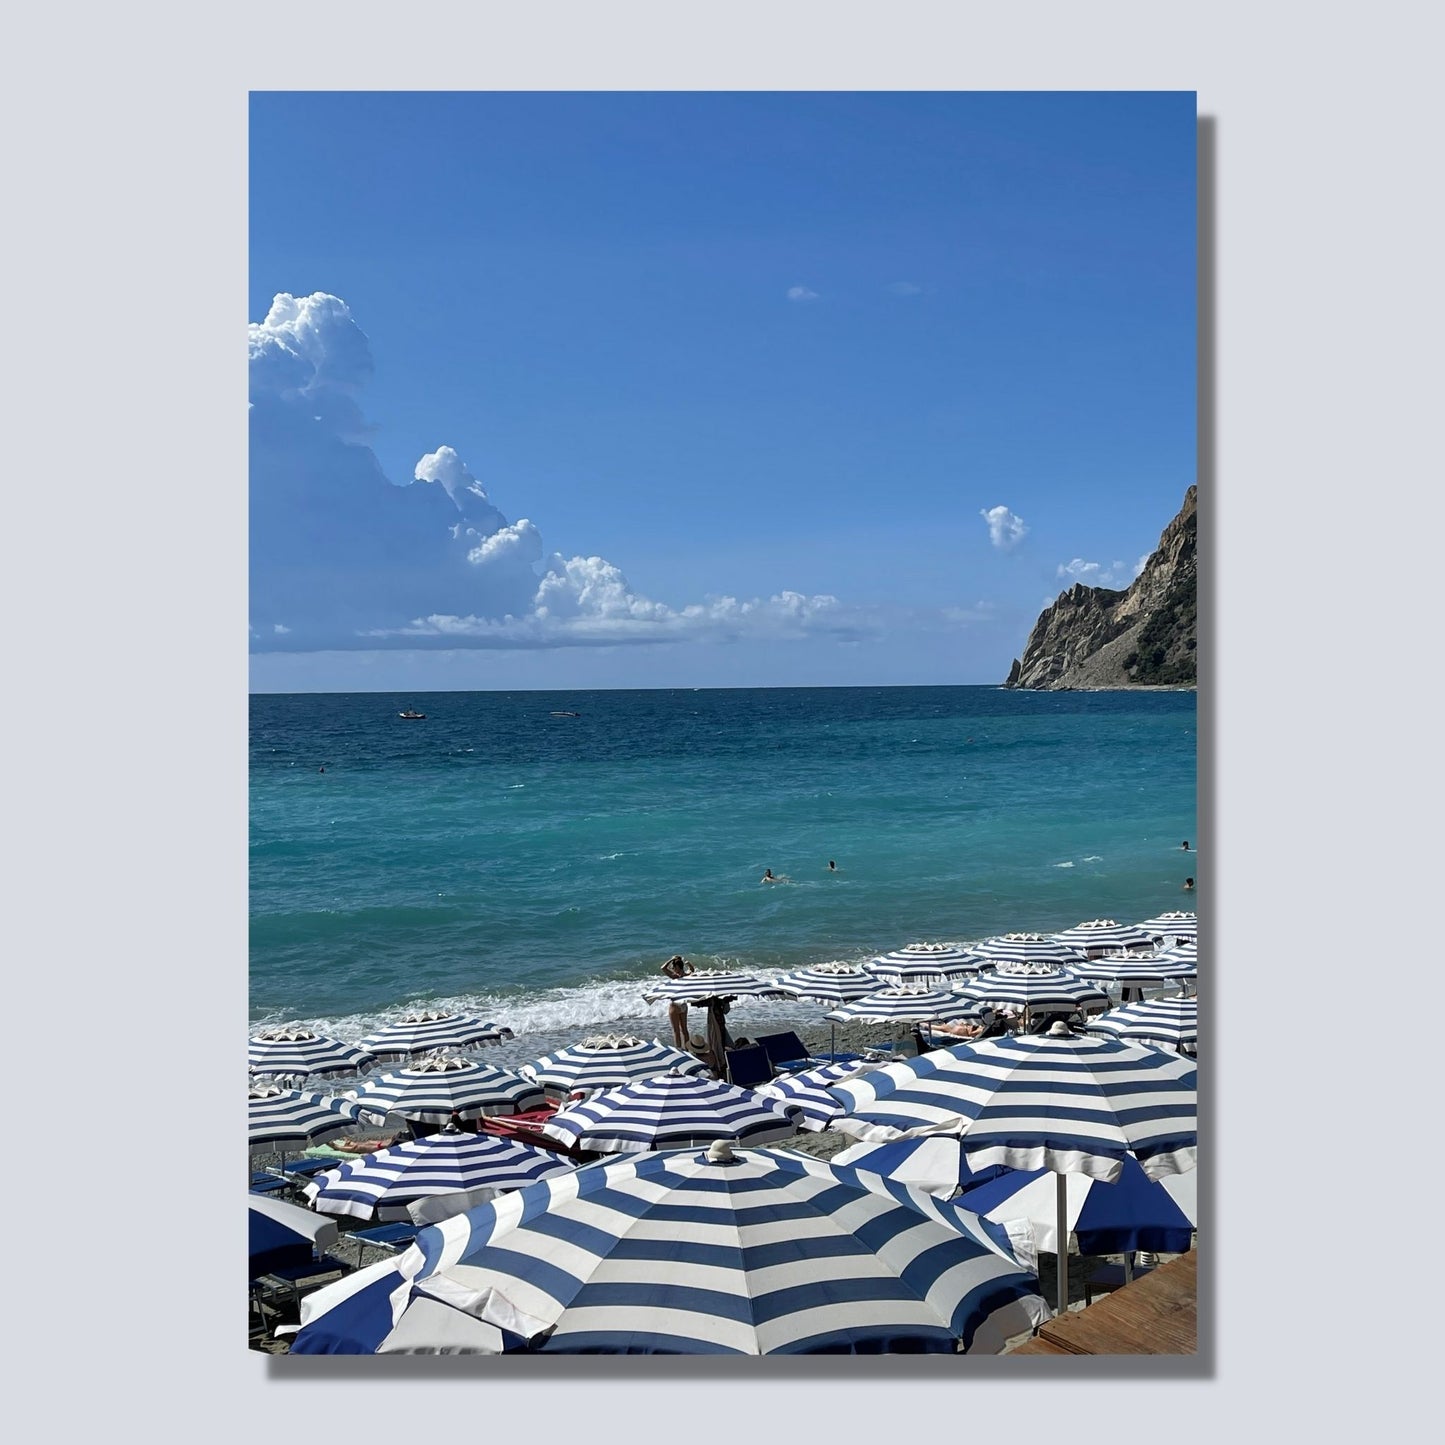 Motiv fra Montereosso al Mare, en av de fem byene i Cinque Terre ved Liguriakysten i Italia. Bildet viser blått middelhav og himmel som helt ned i vannet i horisonten. På høyre side skimtes noen klipper. På sranden er det tett i tett med blå og hvitstripete parasoller. Bildet vise mockup bilde av motiv på lerret.